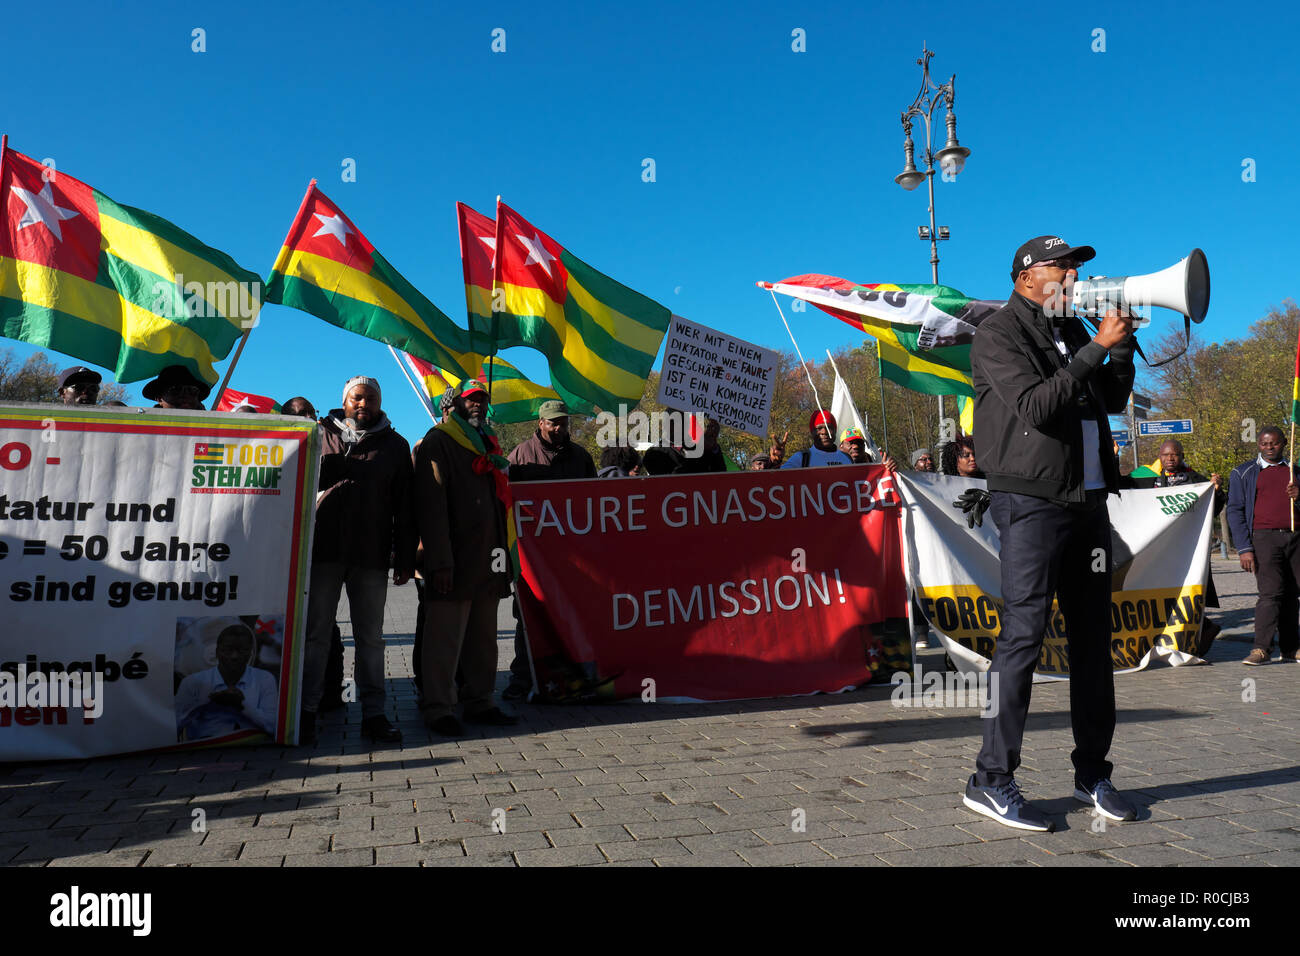 Berlino Germania - i manifestanti si riuniscono per manifestare contro la visita di Faure Gnassingbé Presidente del Togo Foto Stock